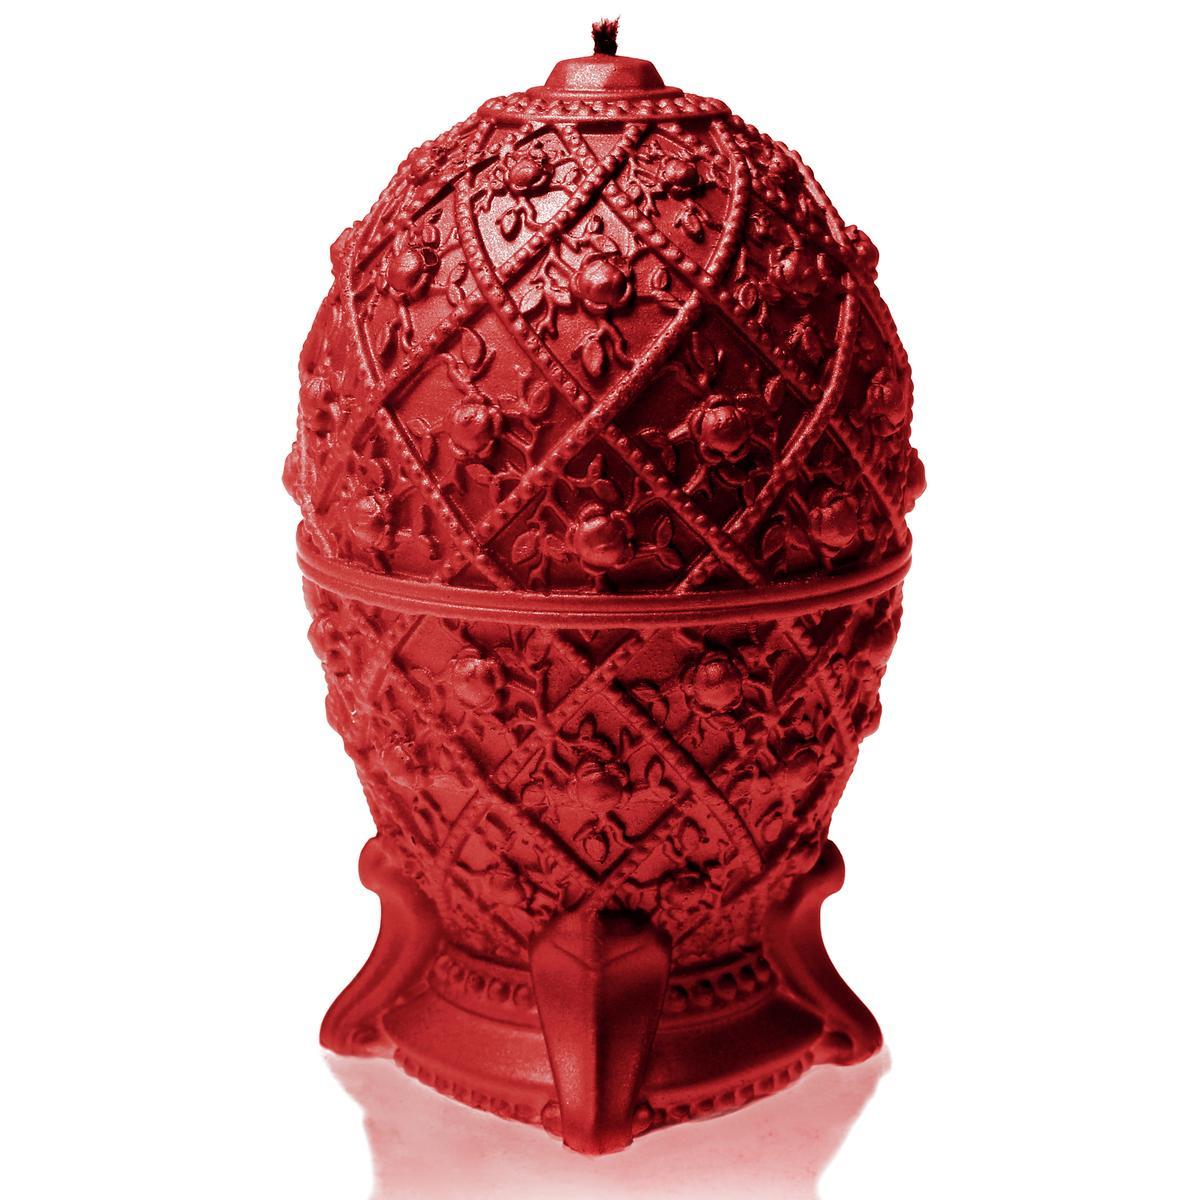 Świeca Faberge Egg Red nr. 1